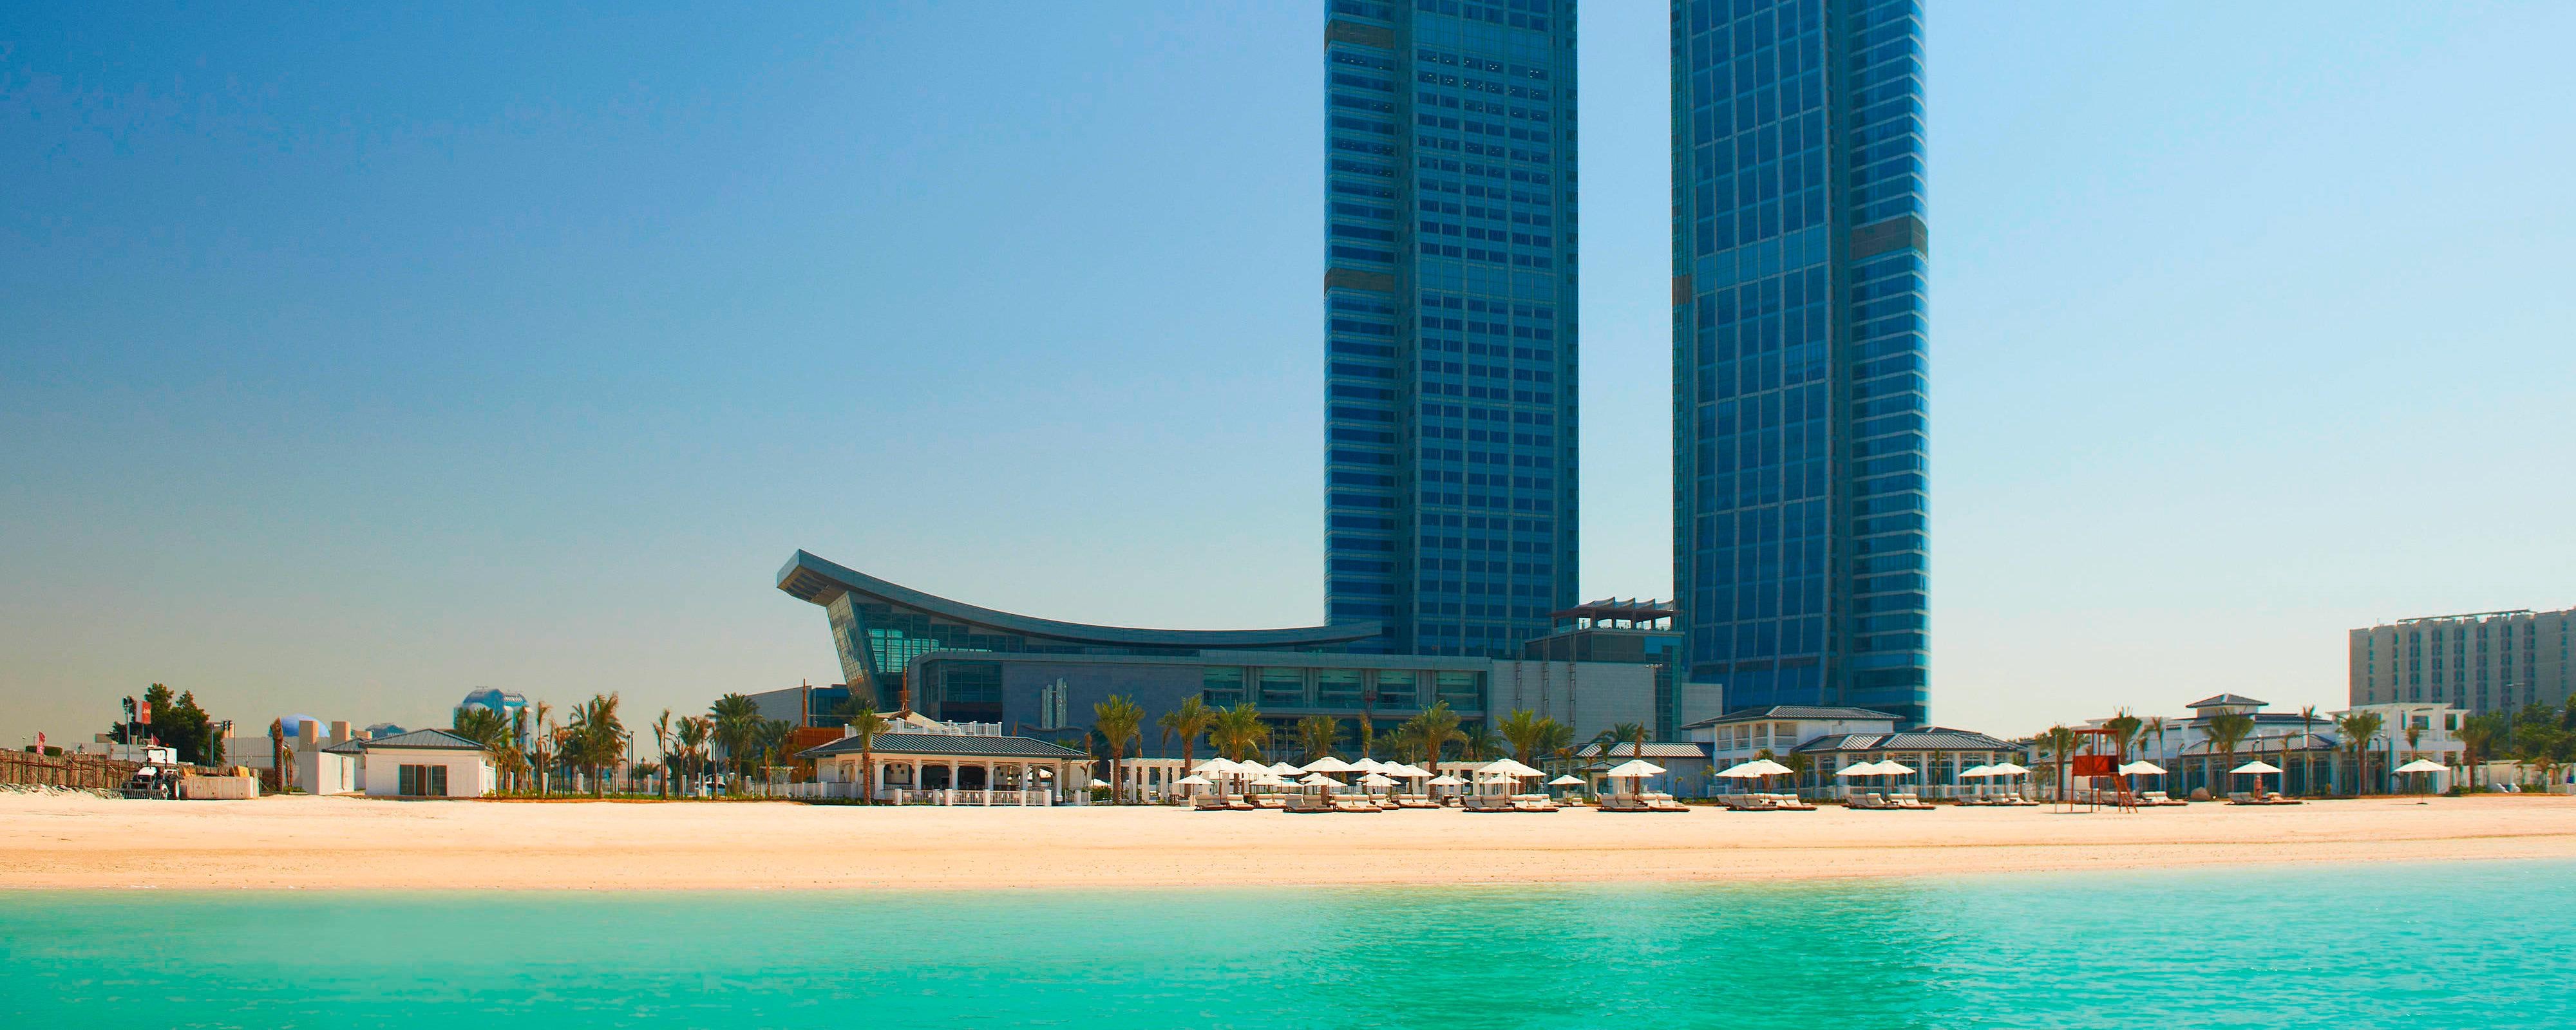 Luxury Hotel In Abu Dhabi The St Regis Abu Dhabi